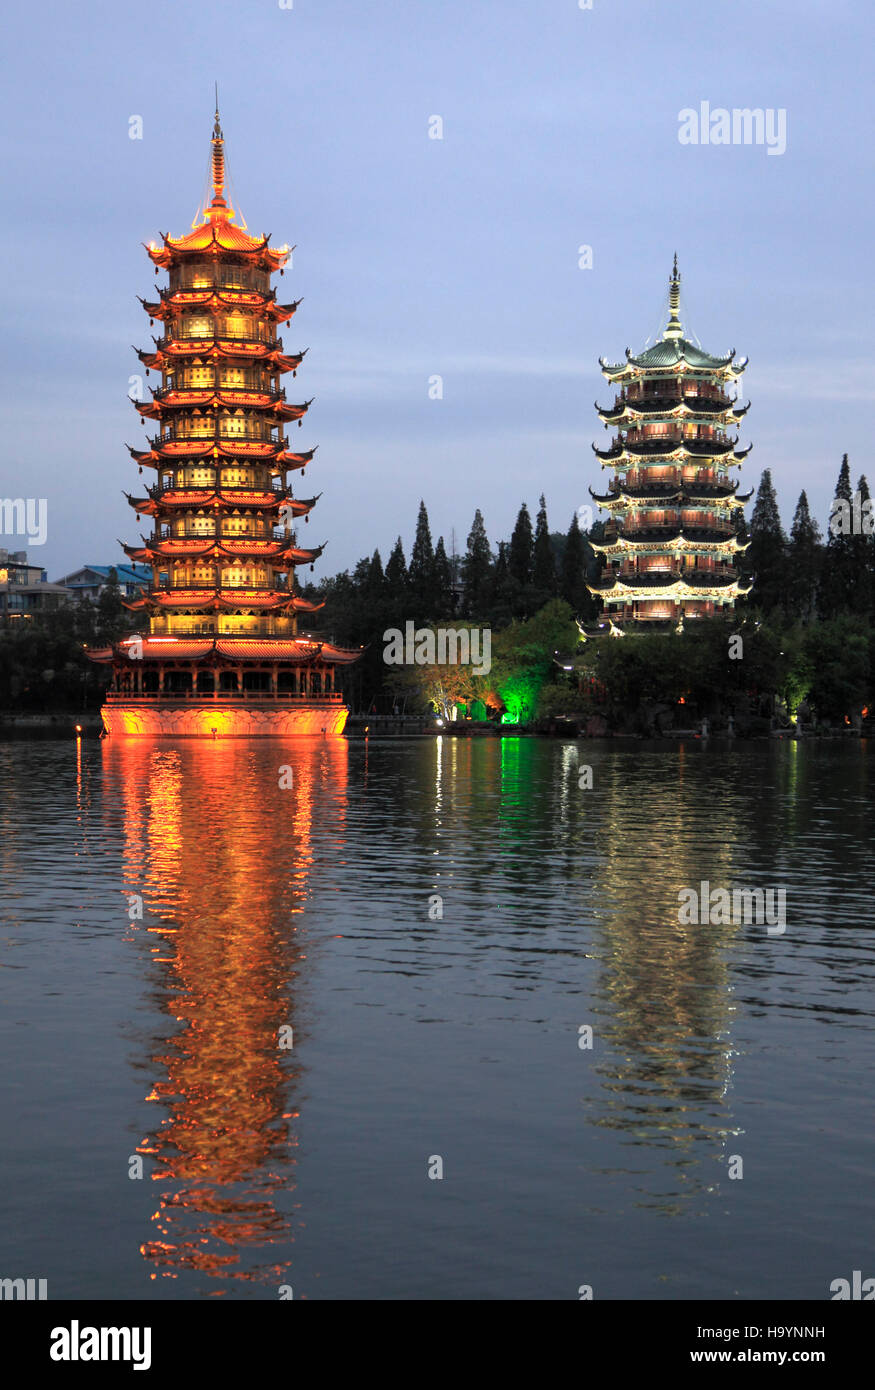 China, Guangxi, Guilin, Sol y Luna, Twin pagodas, Shan, Lago Foto de stock